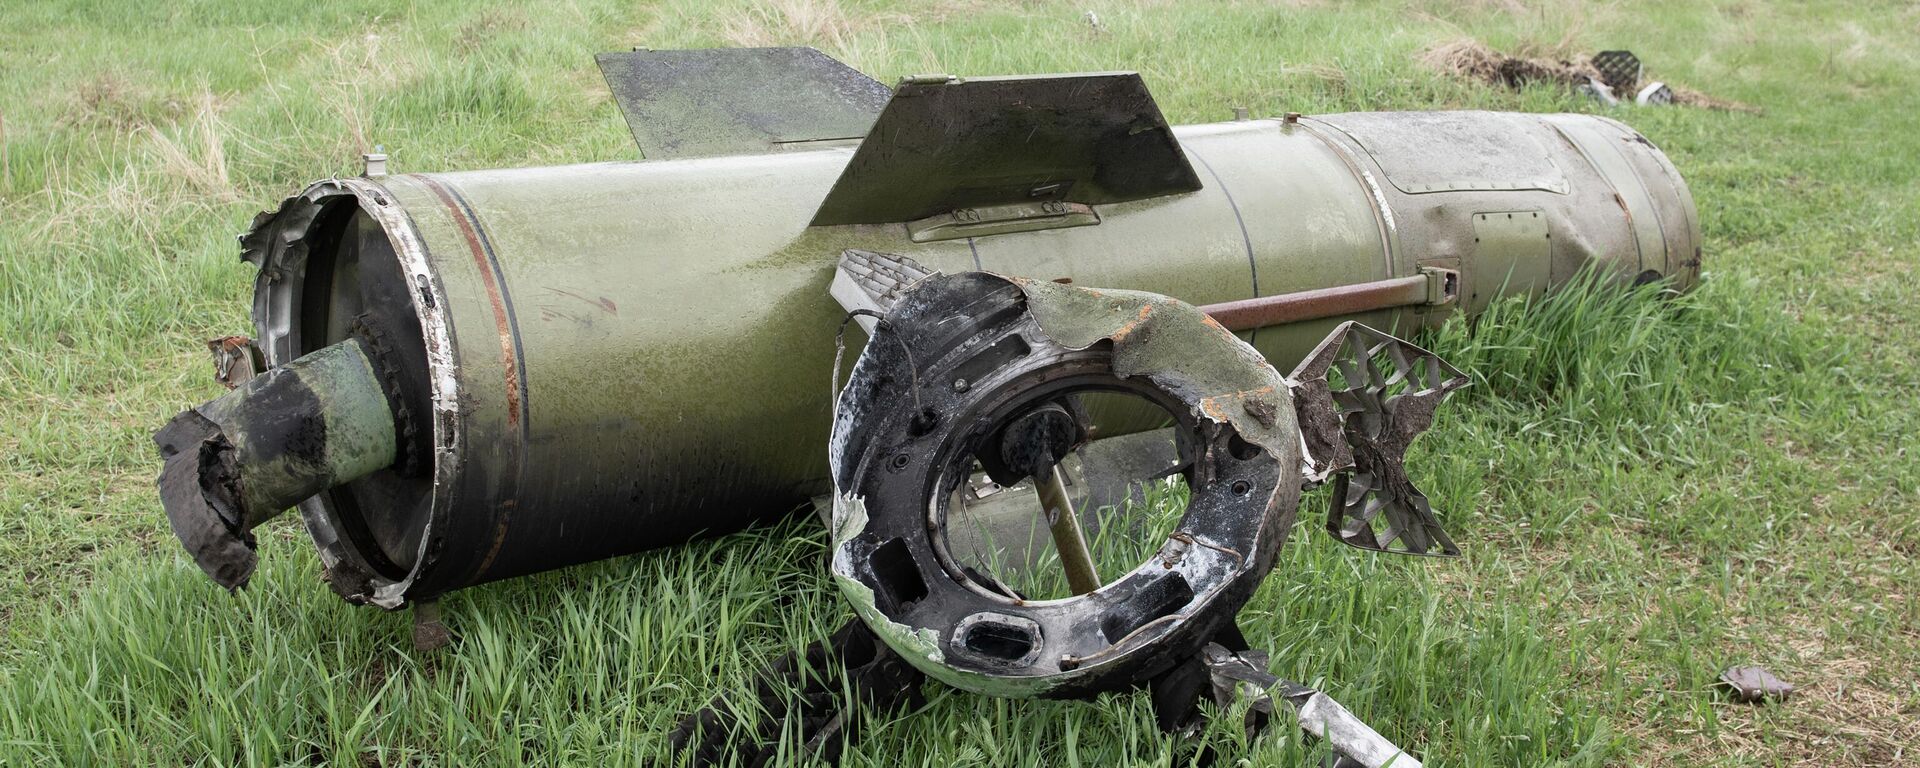 Míssil ucraniano Tochka-U caído no território do hospital militar na região de Zaporozhie, 21 de abril de 2022 - Sputnik Brasil, 1920, 29.08.2022